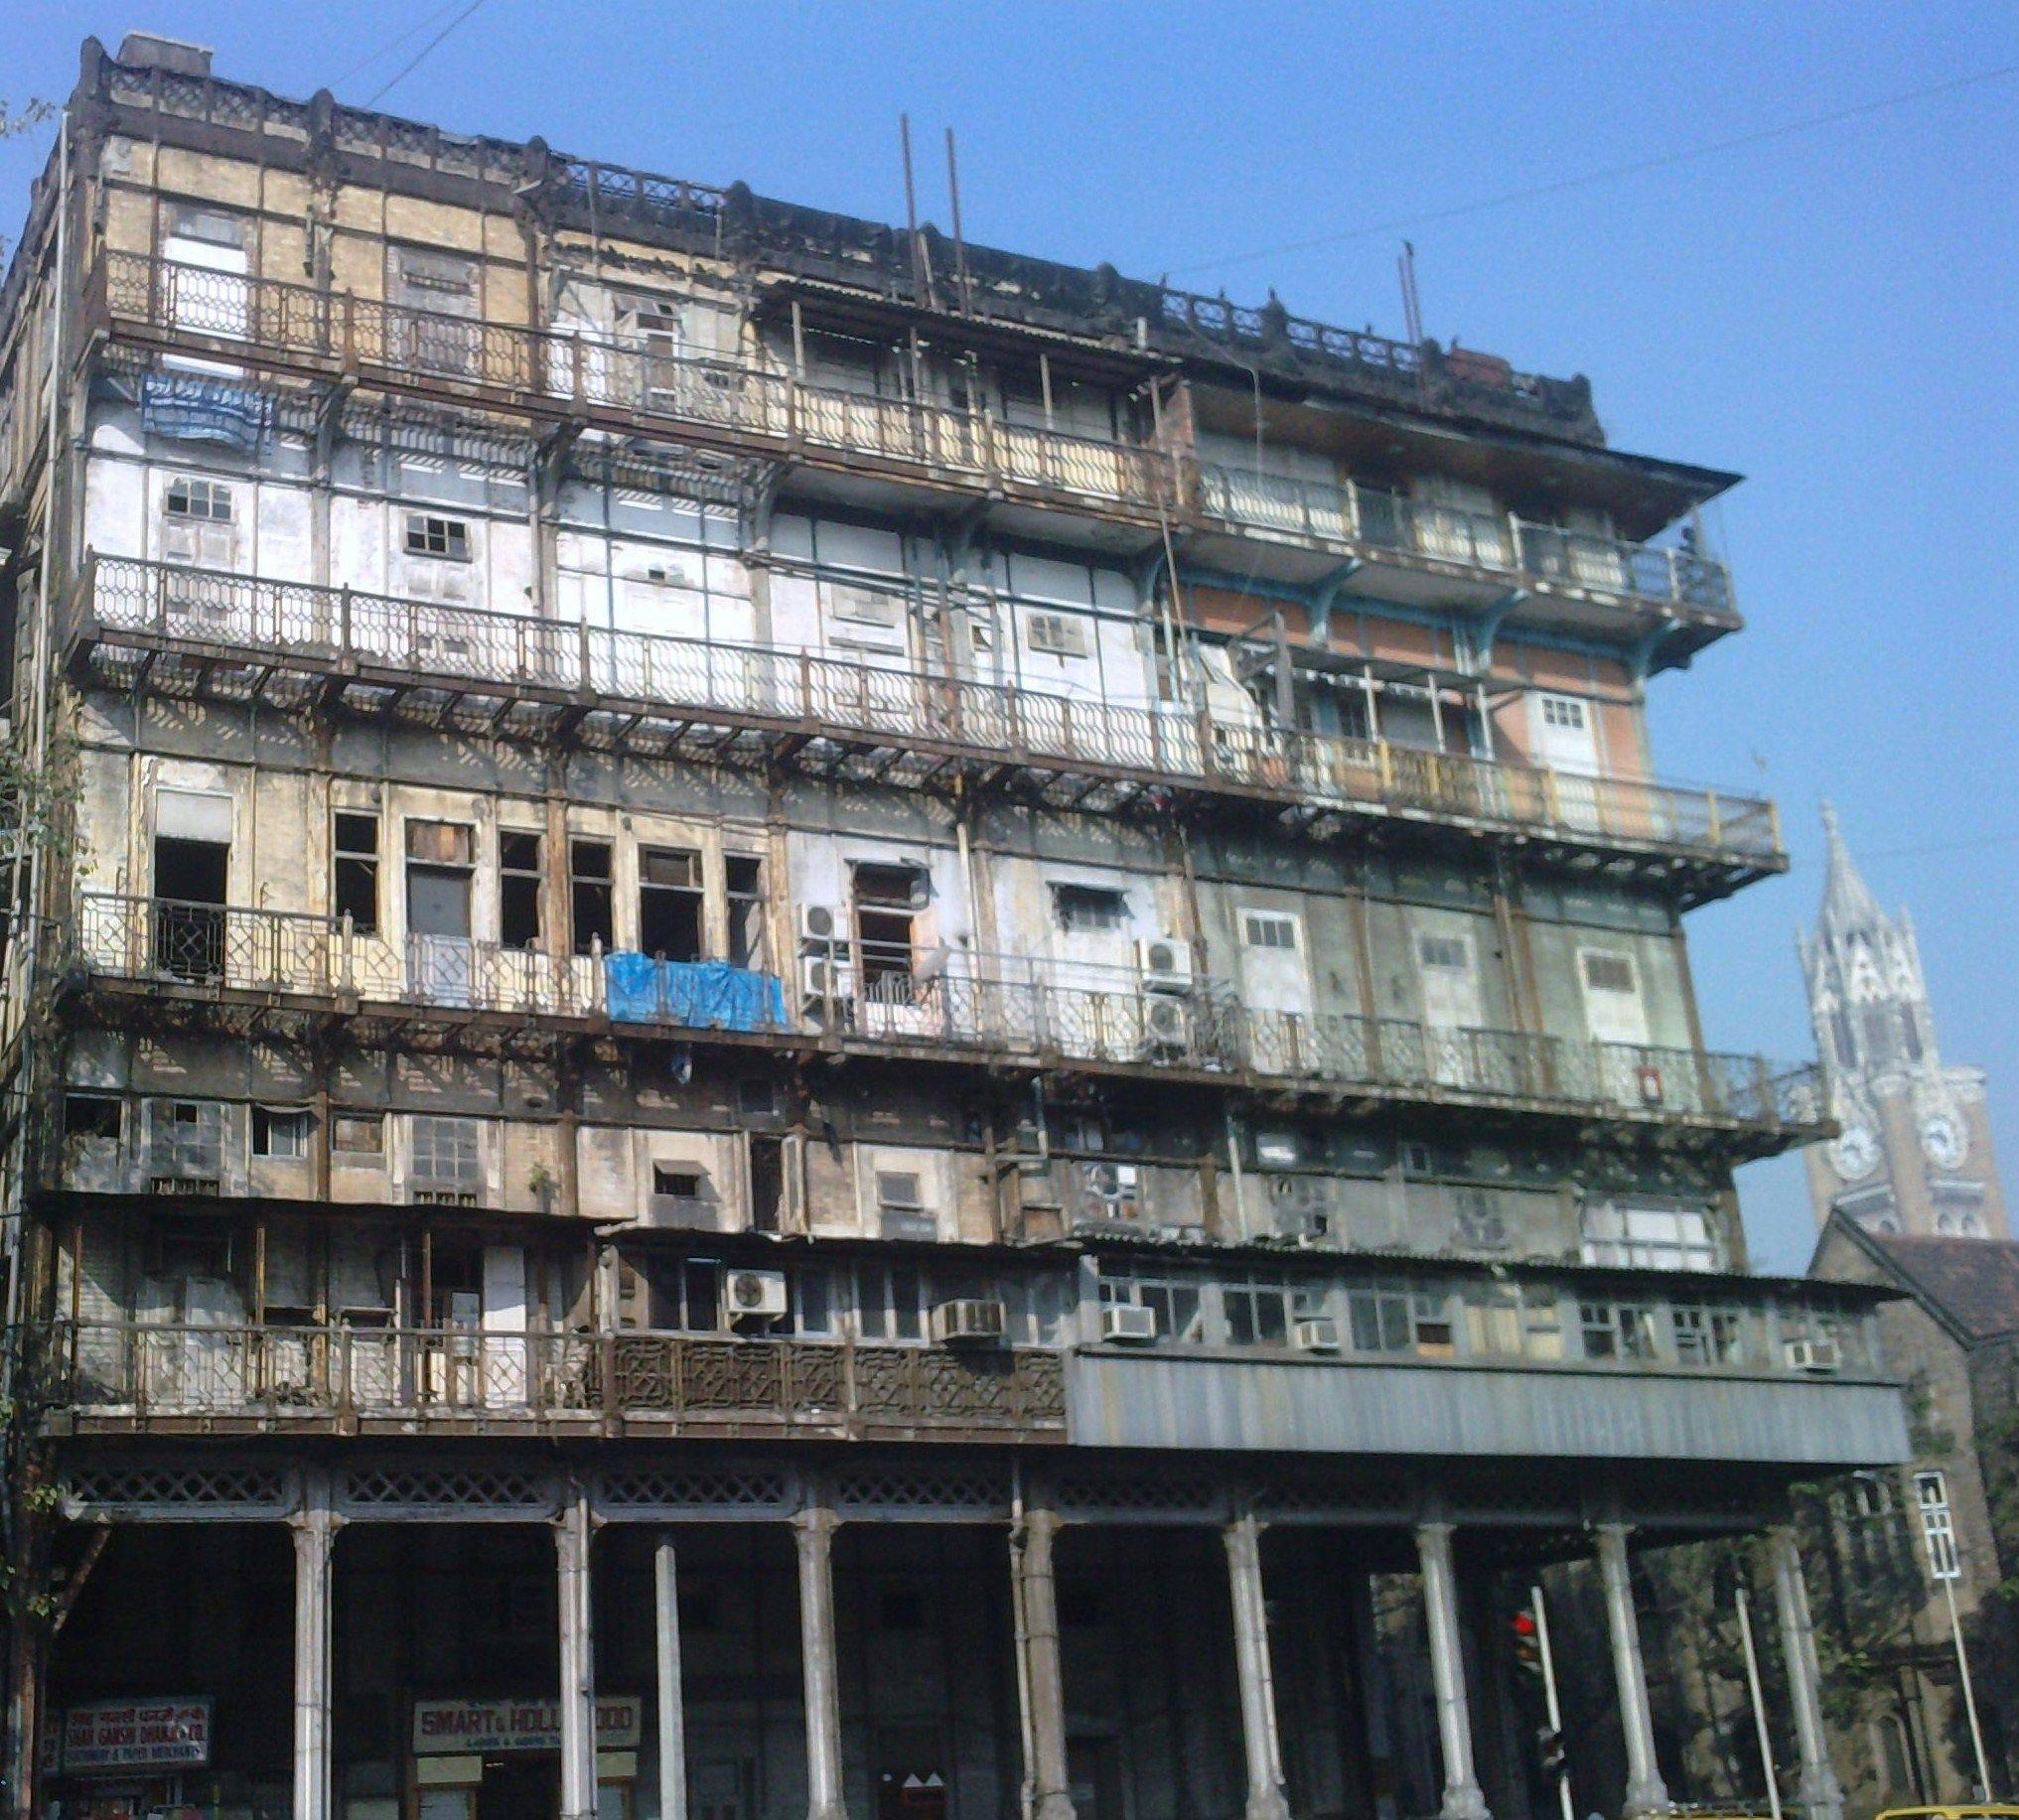 The facade as seen from Kala Ghoda area